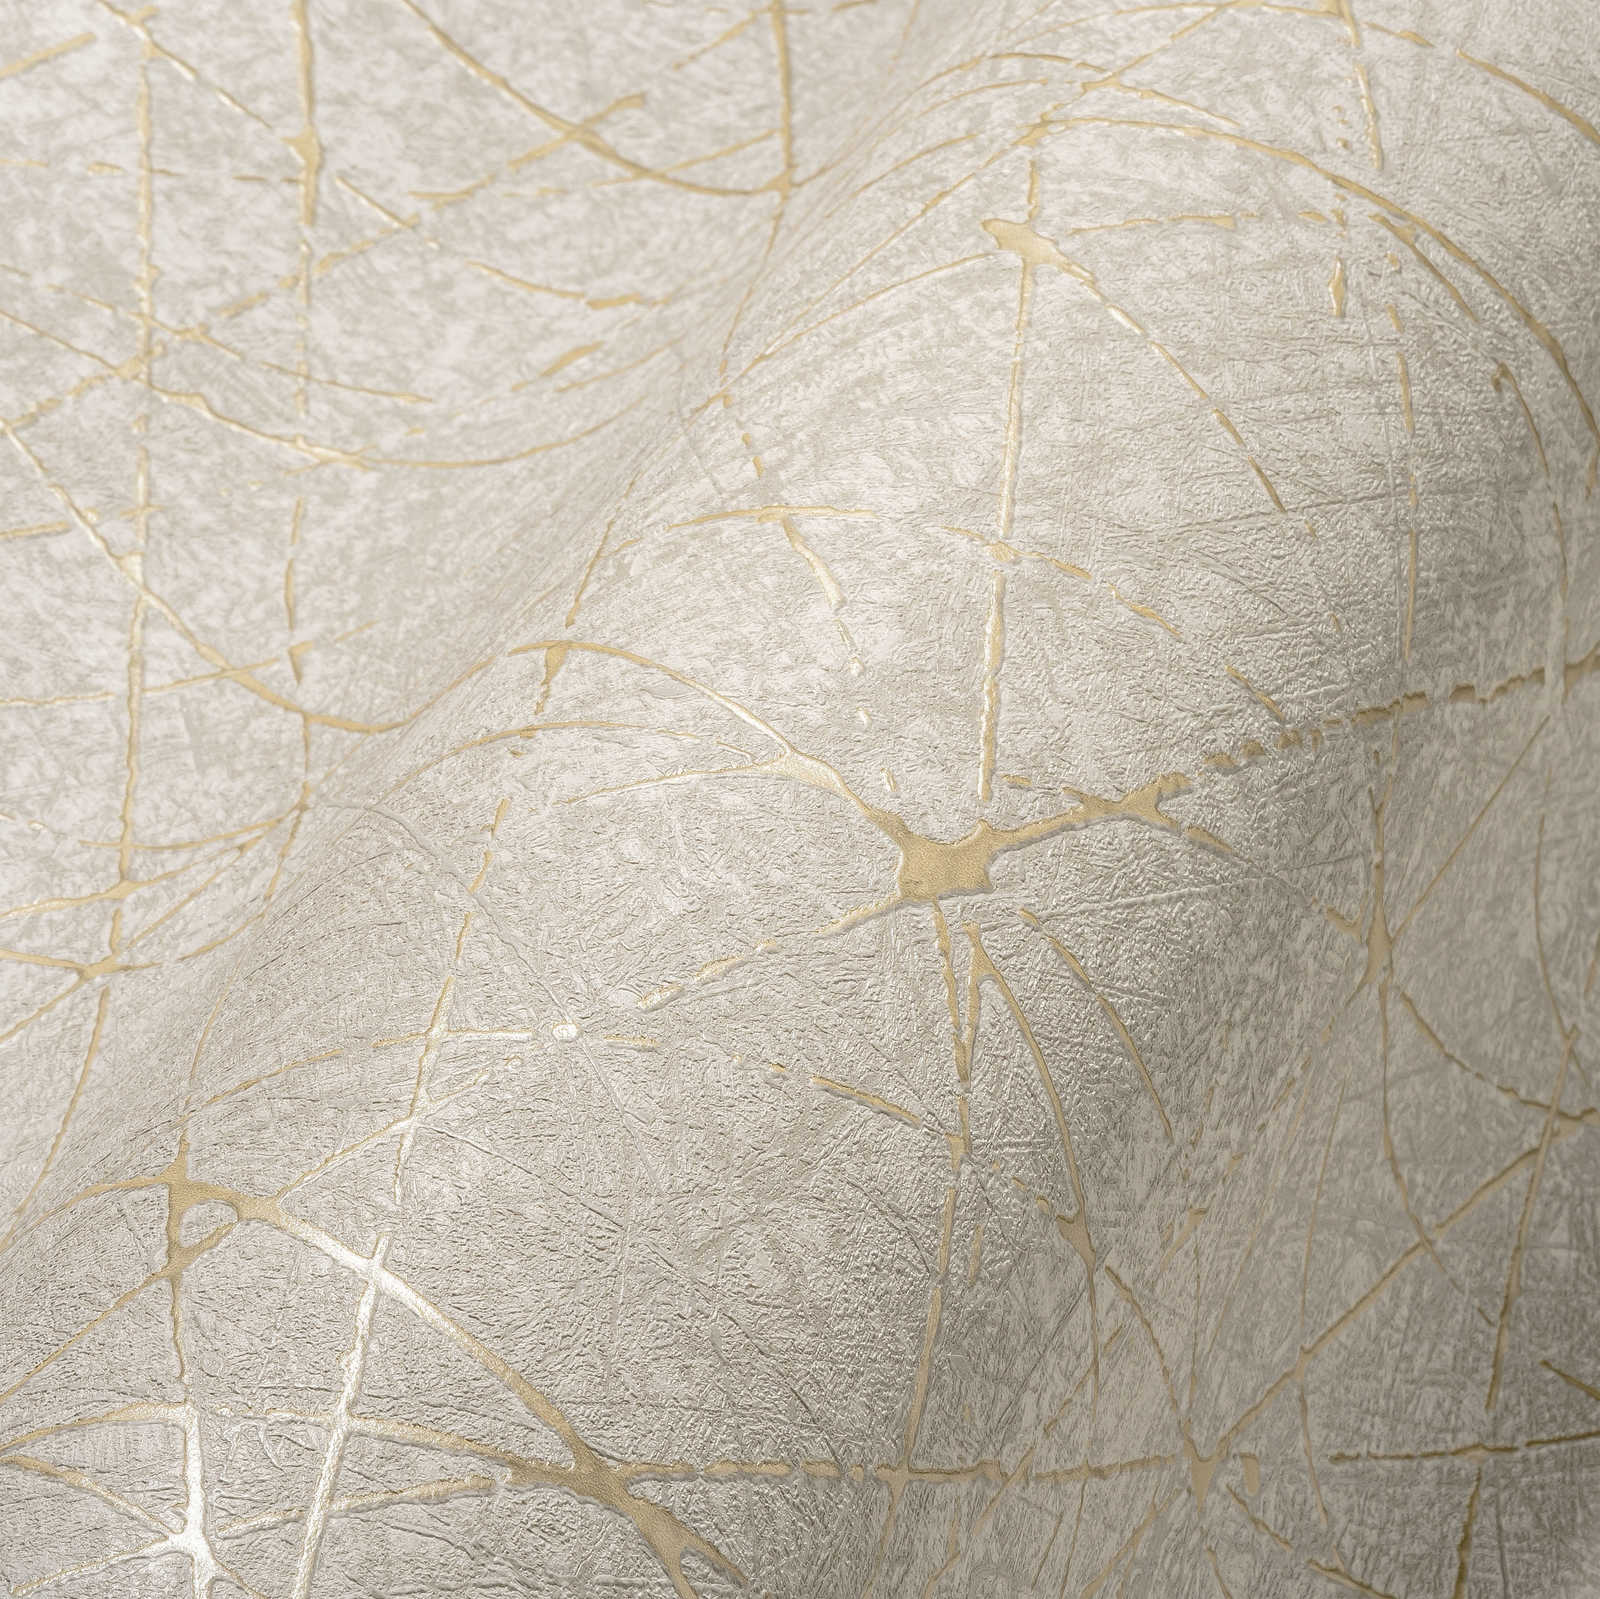             Vliestapete mit grafischen Linien & Metalliceffekt – Creme, Grau, Gold
        